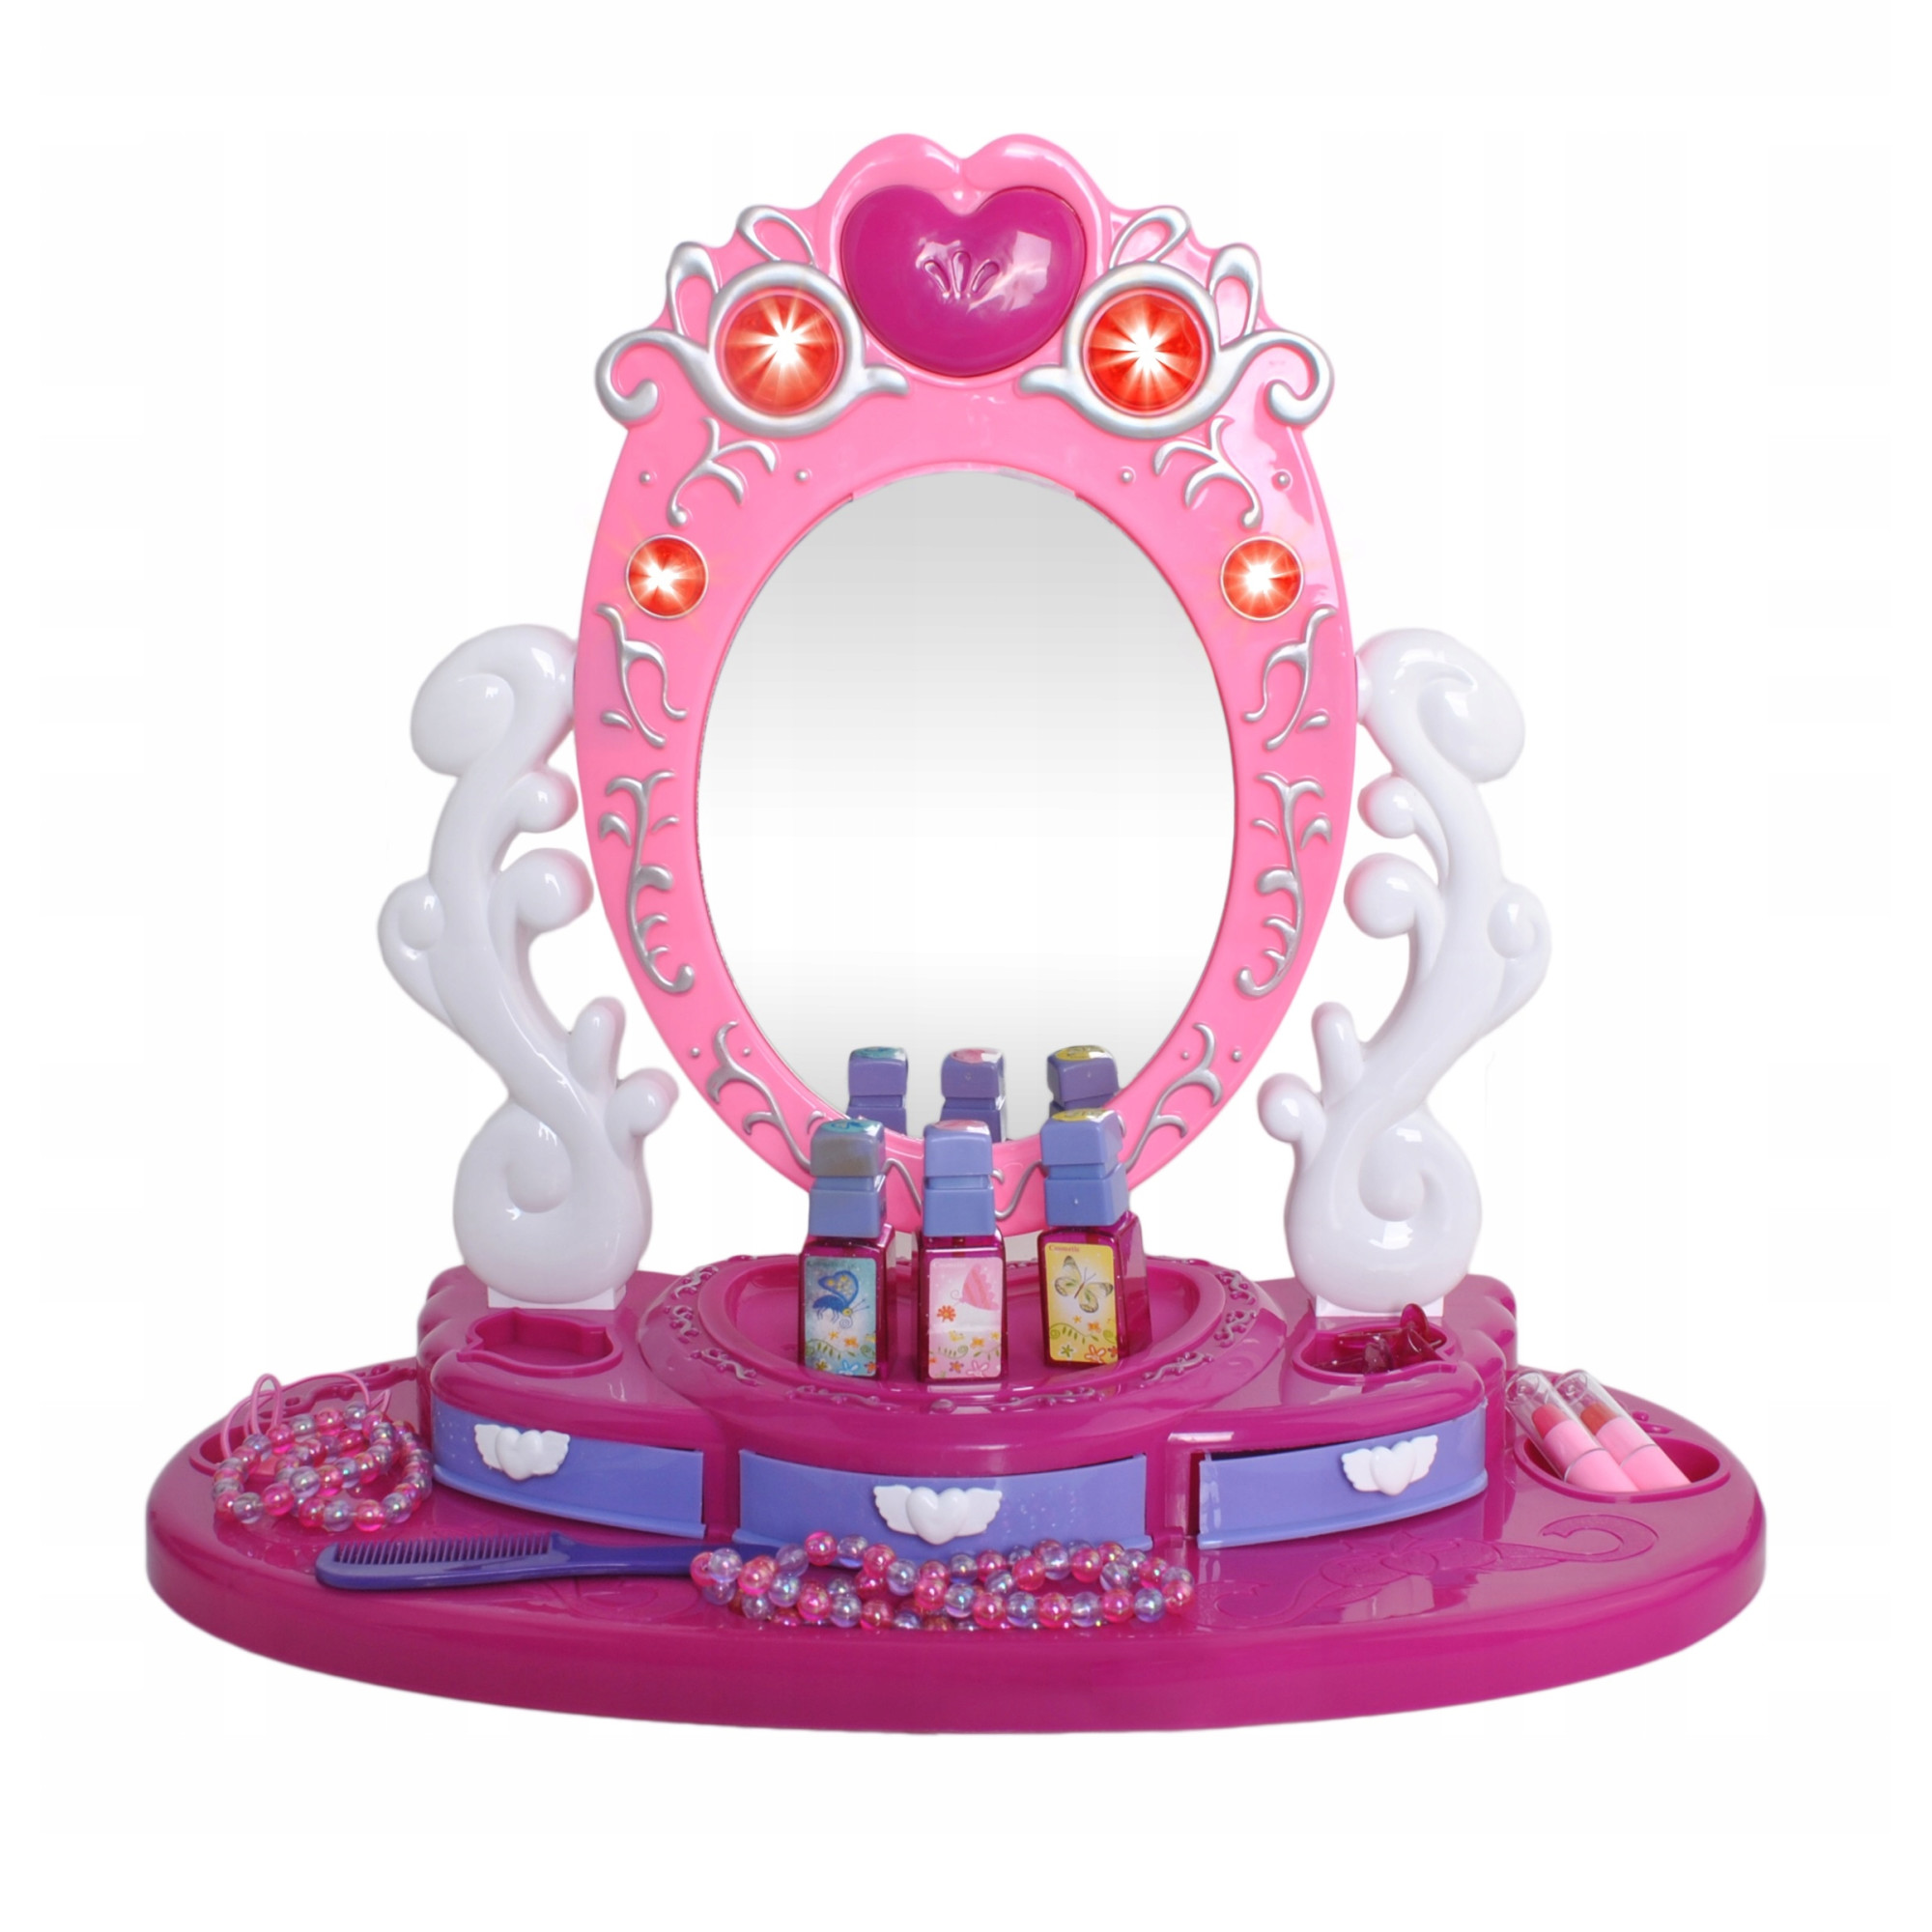 Oglinda de machiaj pentru copii, Zola, accesorii incluse, 40 cm